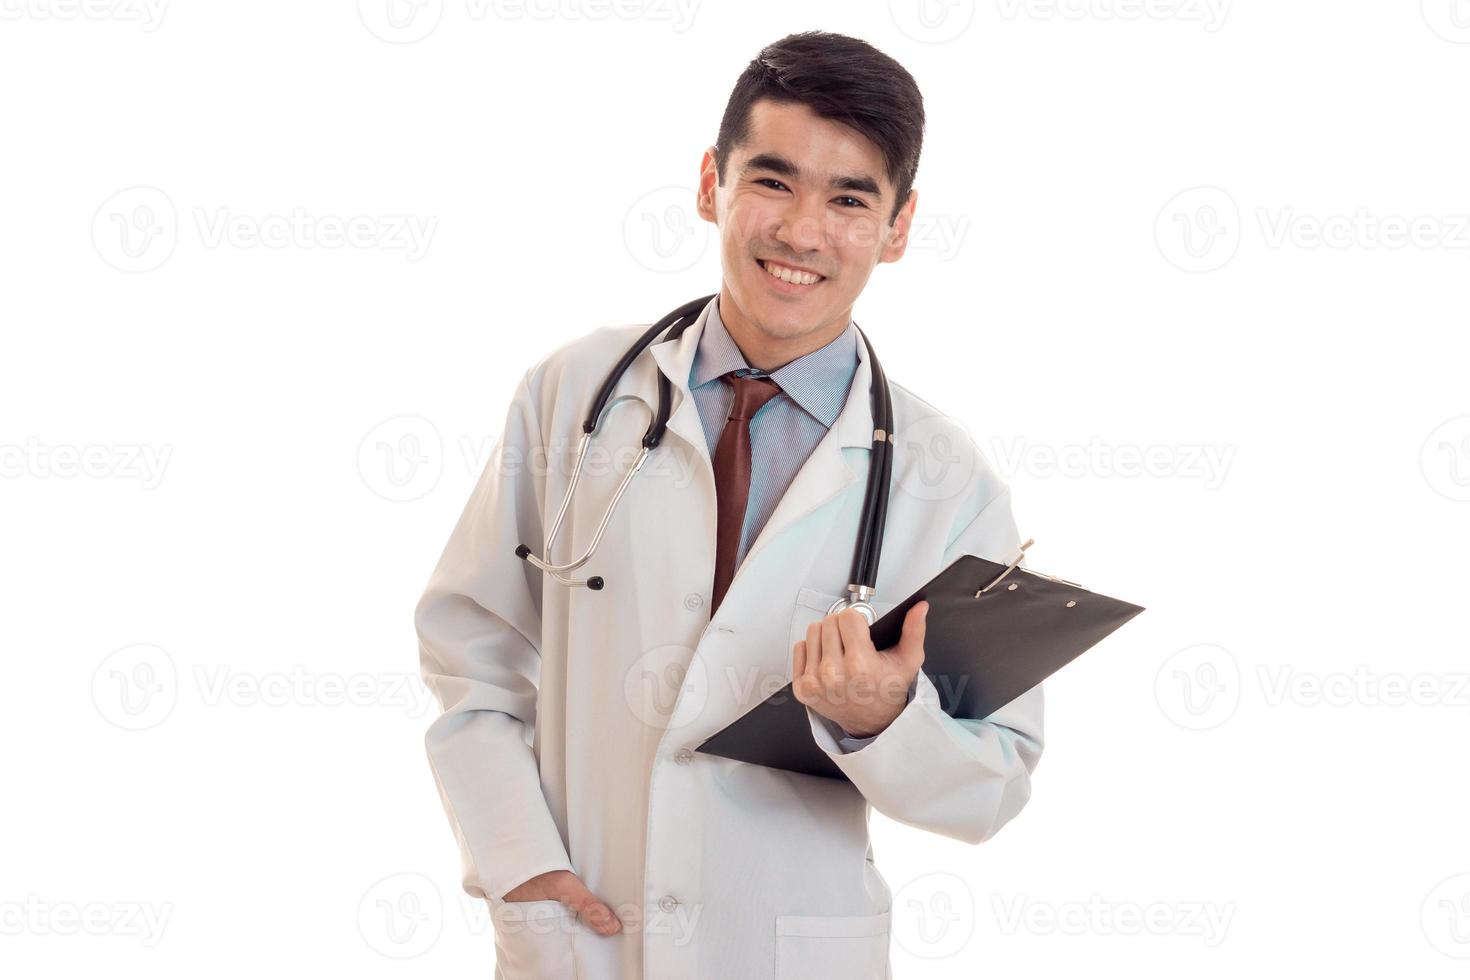 jovem morena feliz médico de uniforme com estetoscópio nos ombros faz anotações isoladas no fundo branco foto